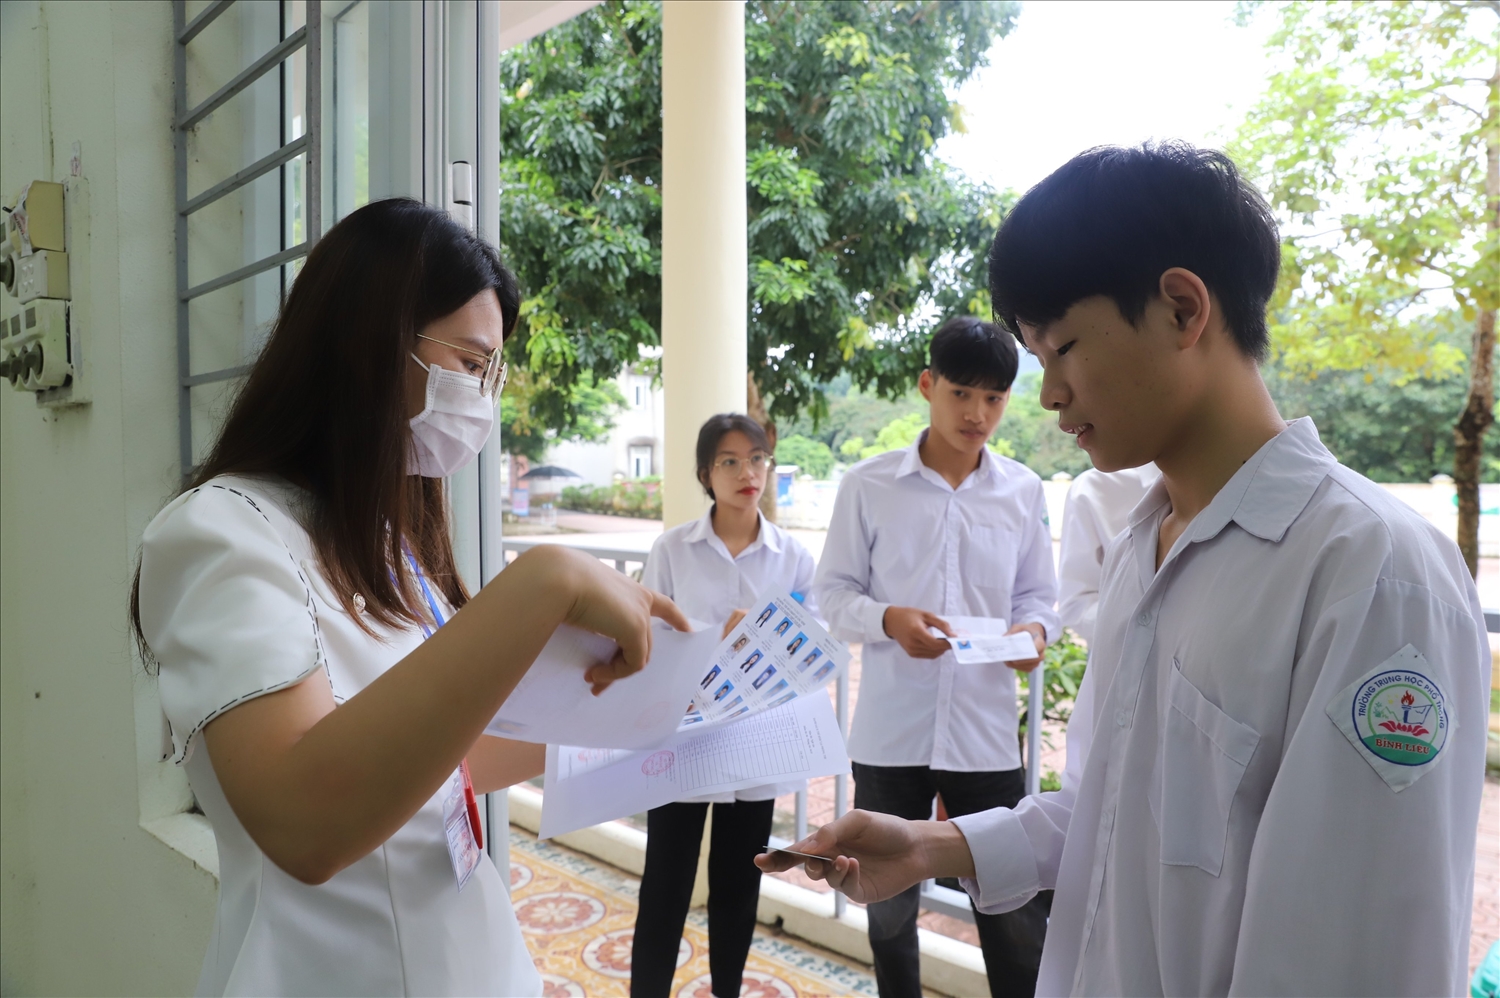 Giám thị trường THPT Bình Liêu (Quảng Ninh) kiểm tra lại thông tin học sinh trước khi vào phòng thi